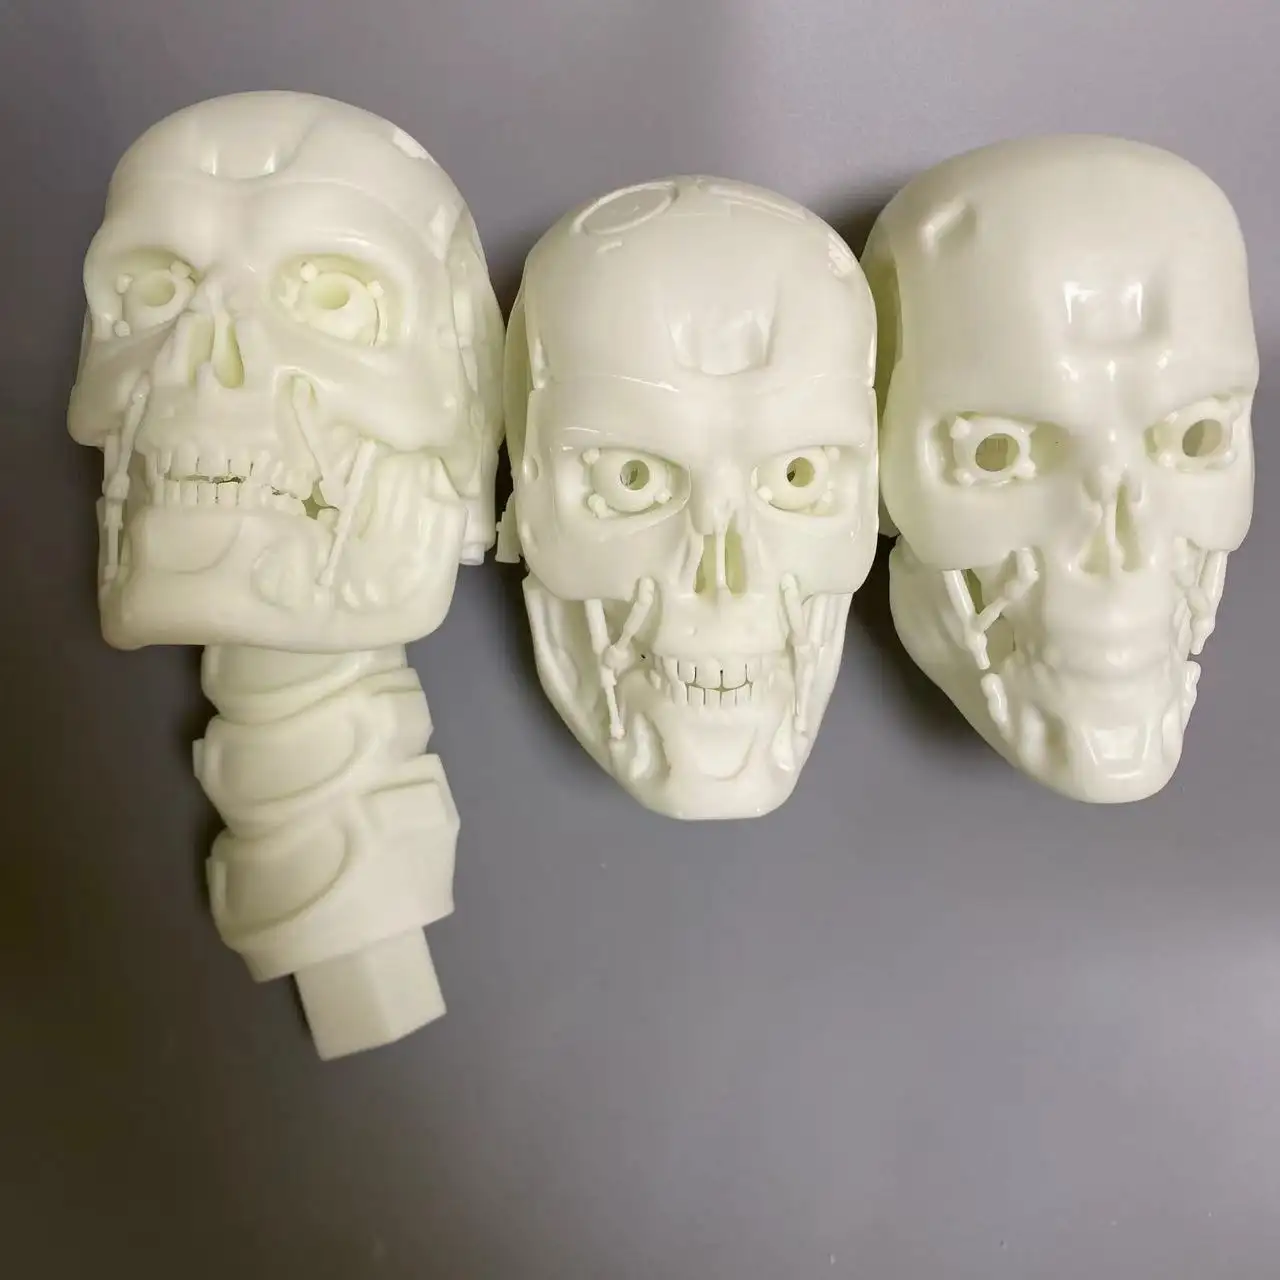 Custom 3d Model Head Sculpture Parts 3d parts Printing Service